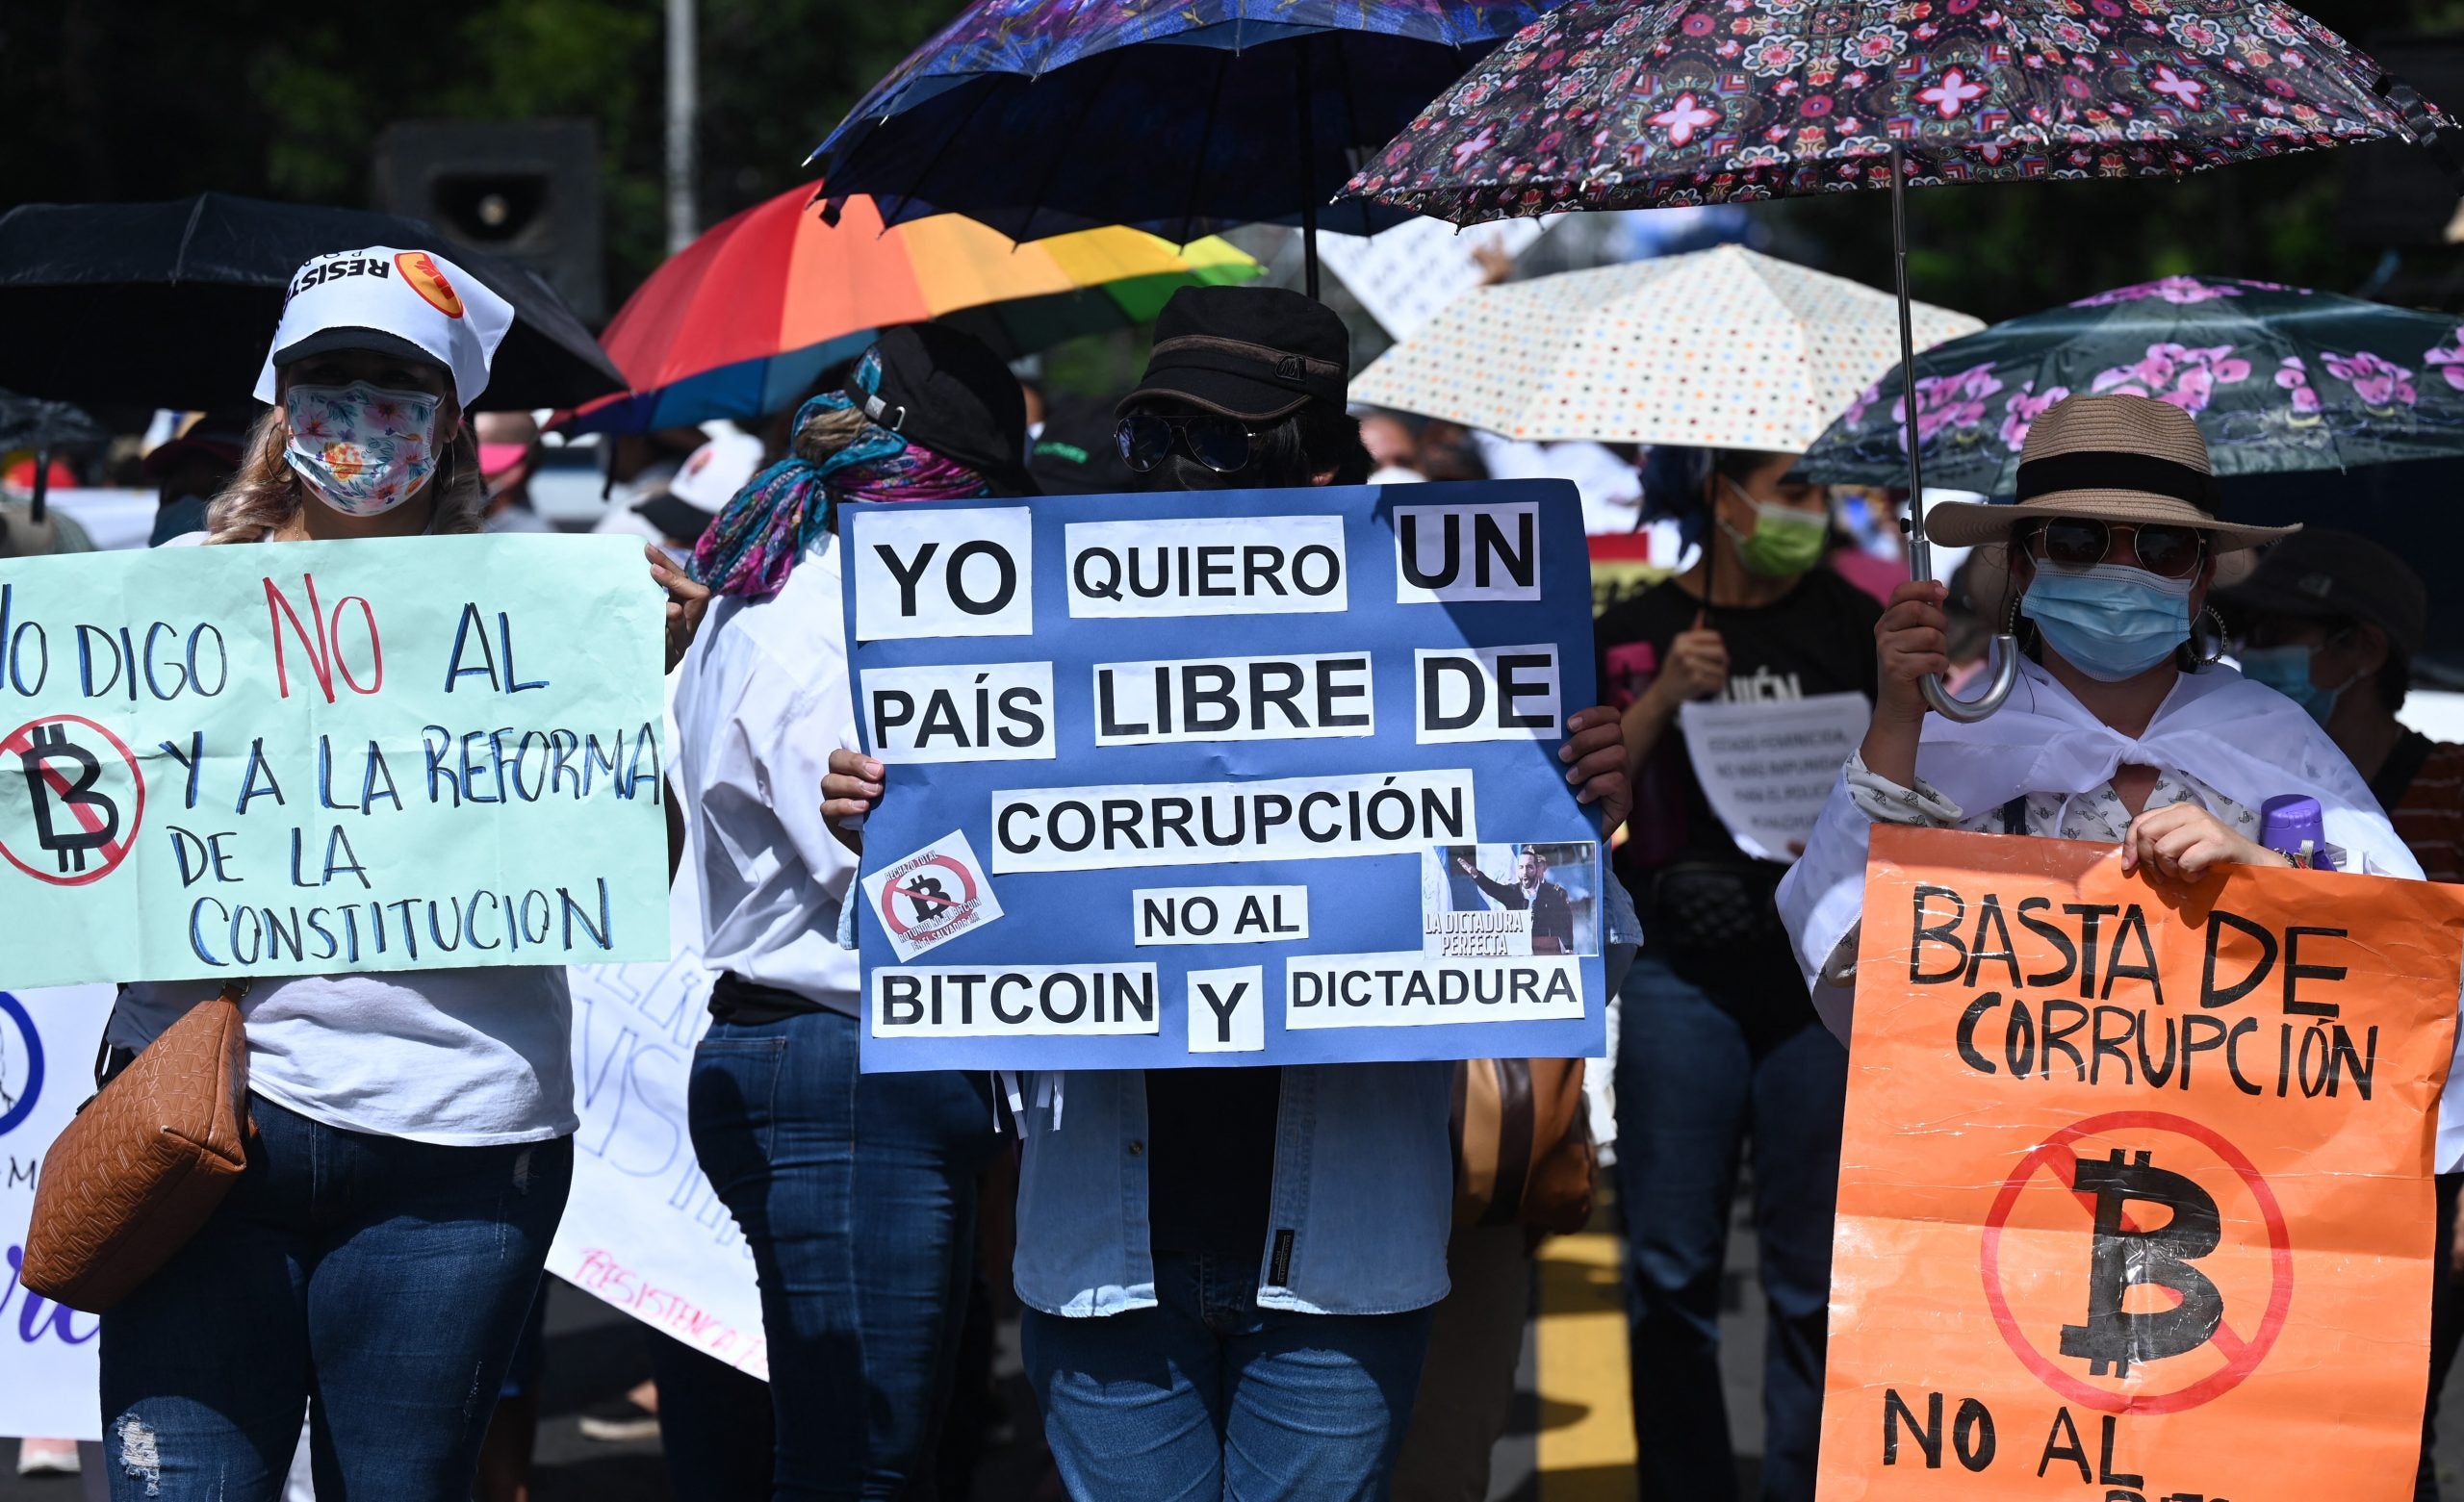 Mensajes como "no a los bitcoins o yo quiero un país libre", se leían en las pancartas que llevaban los protestantes.